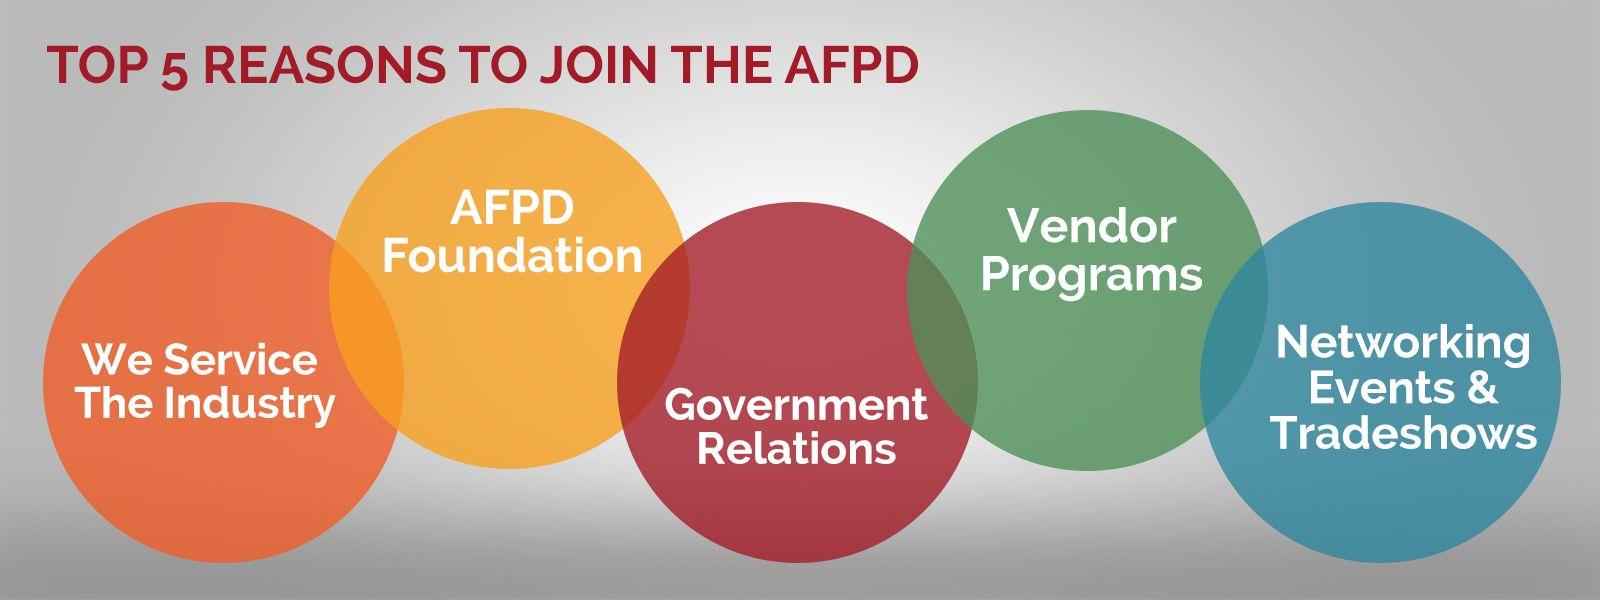 AFPD Logo - AFPD